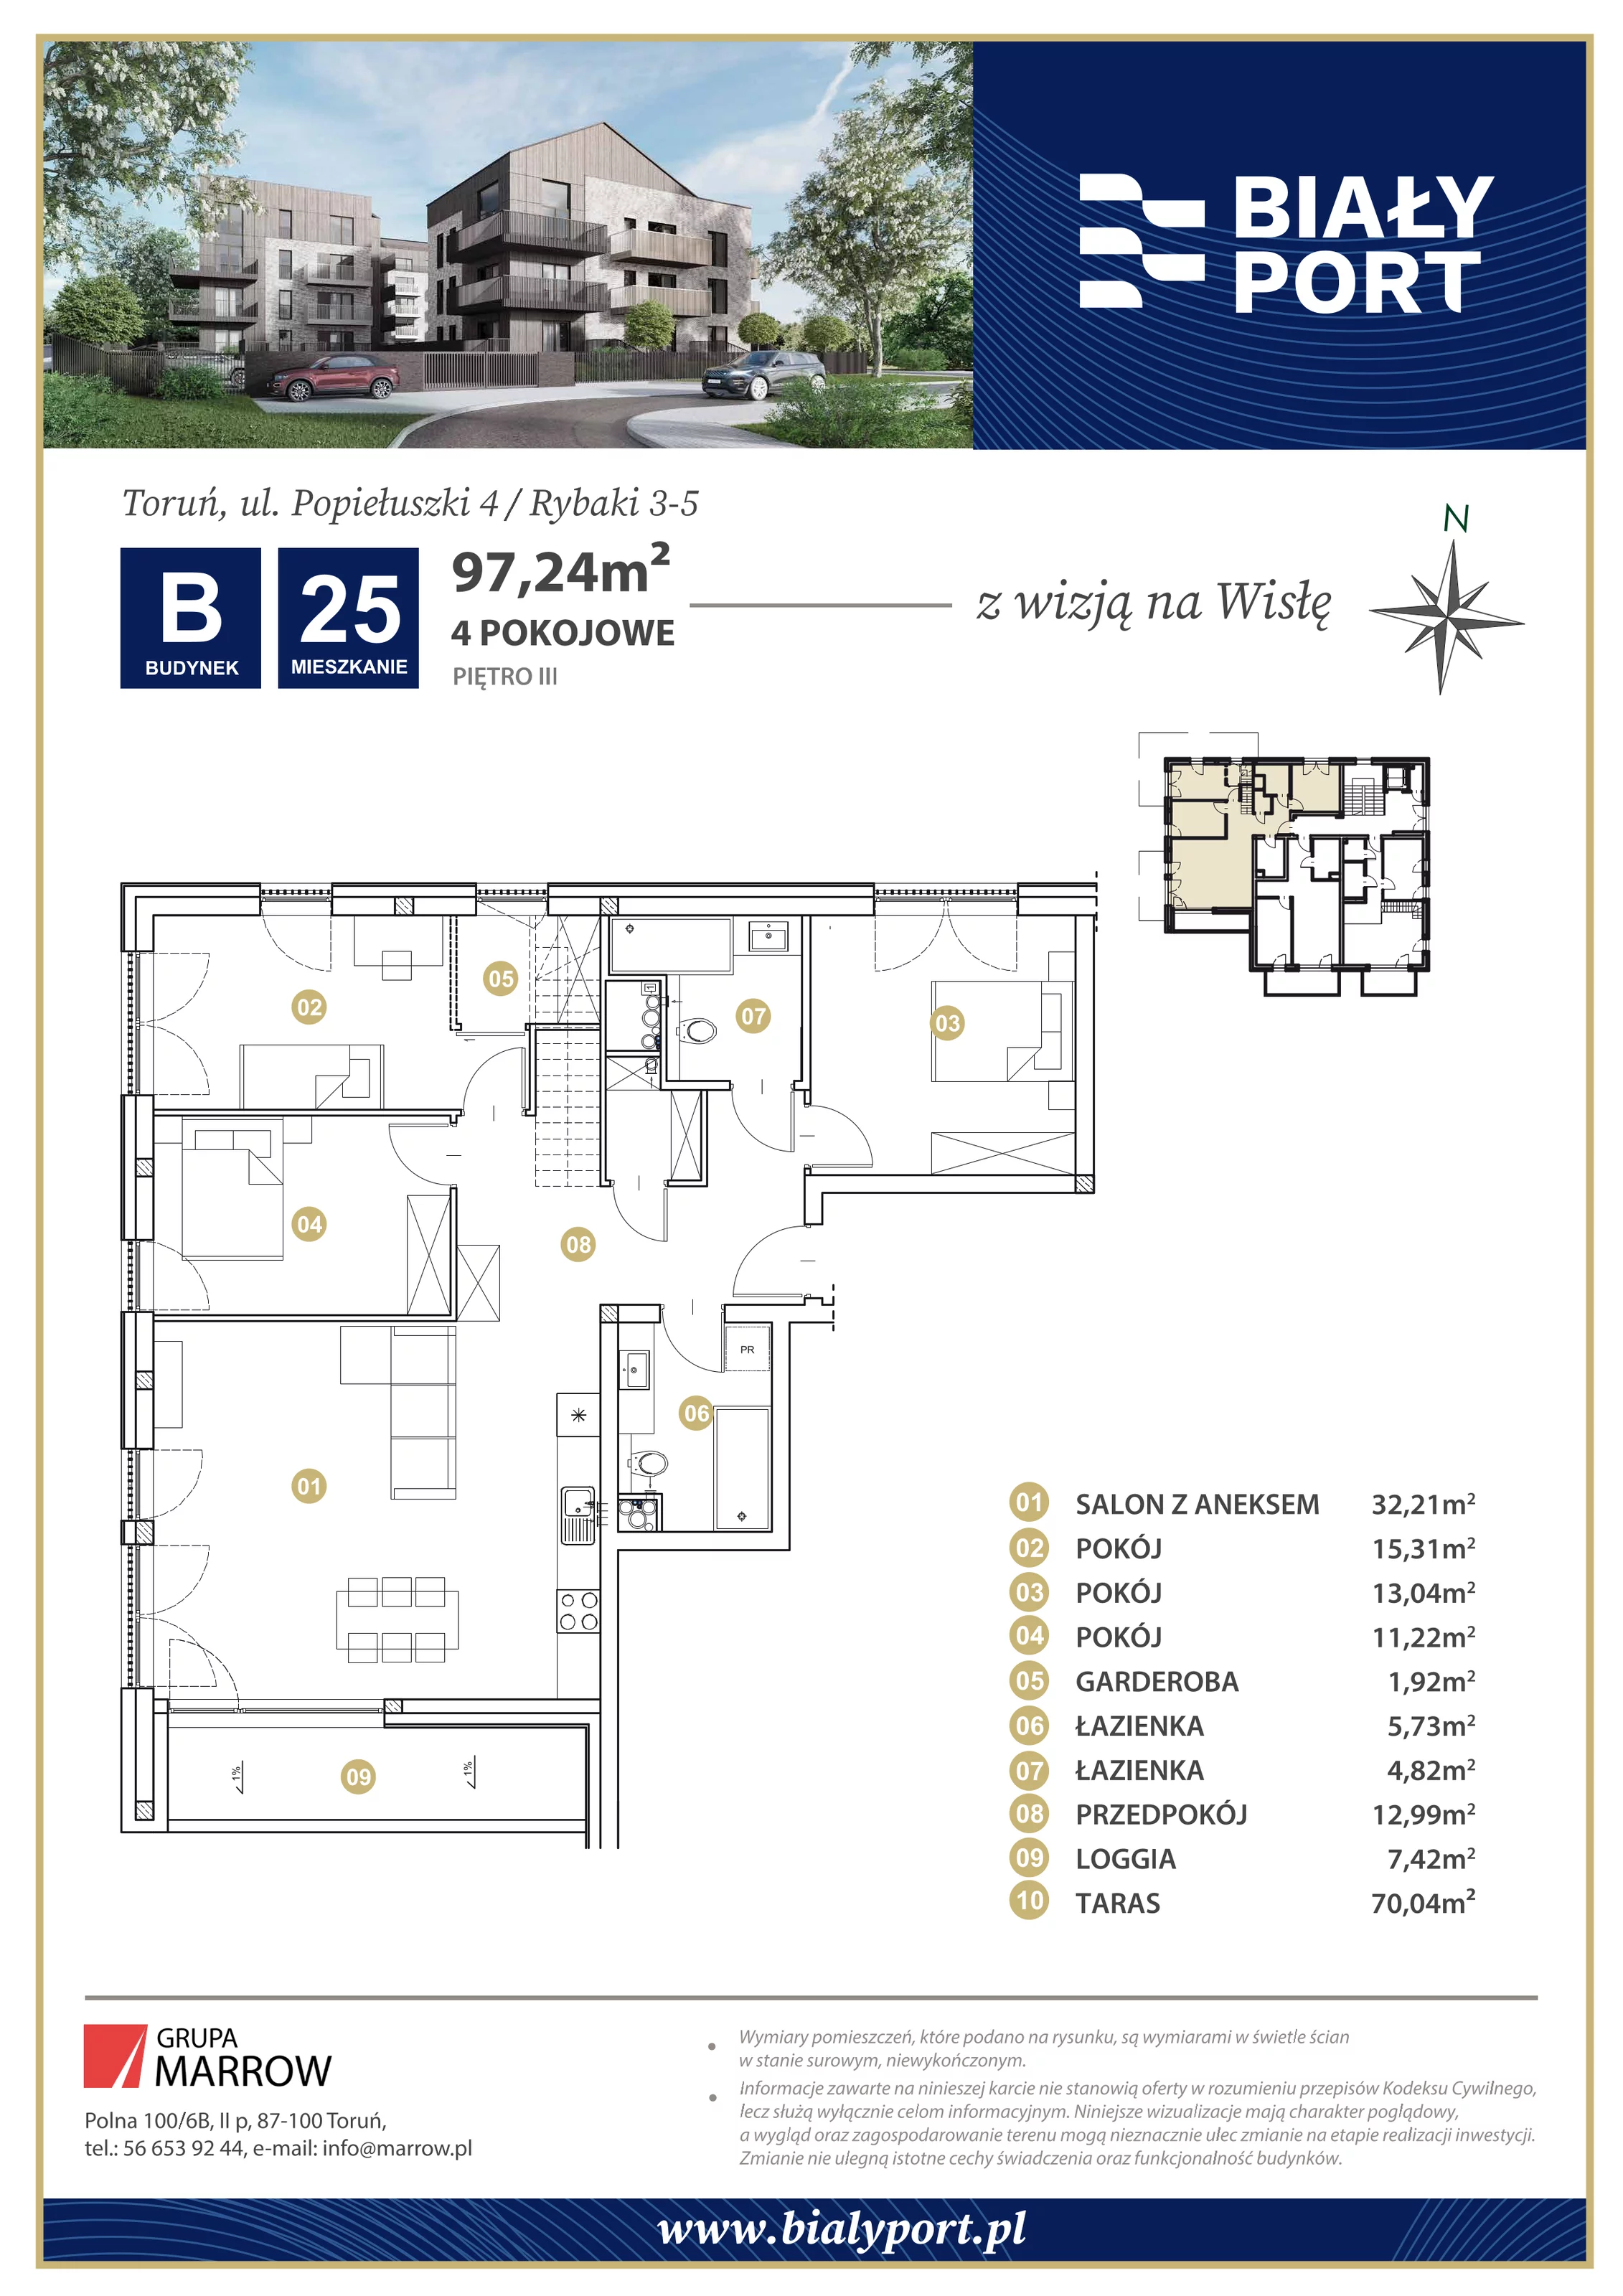 Mieszkanie 97,24 m², piętro 3, oferta nr 25, Biały Port, Toruń, Rybaki, ul. Popiełuszki 4